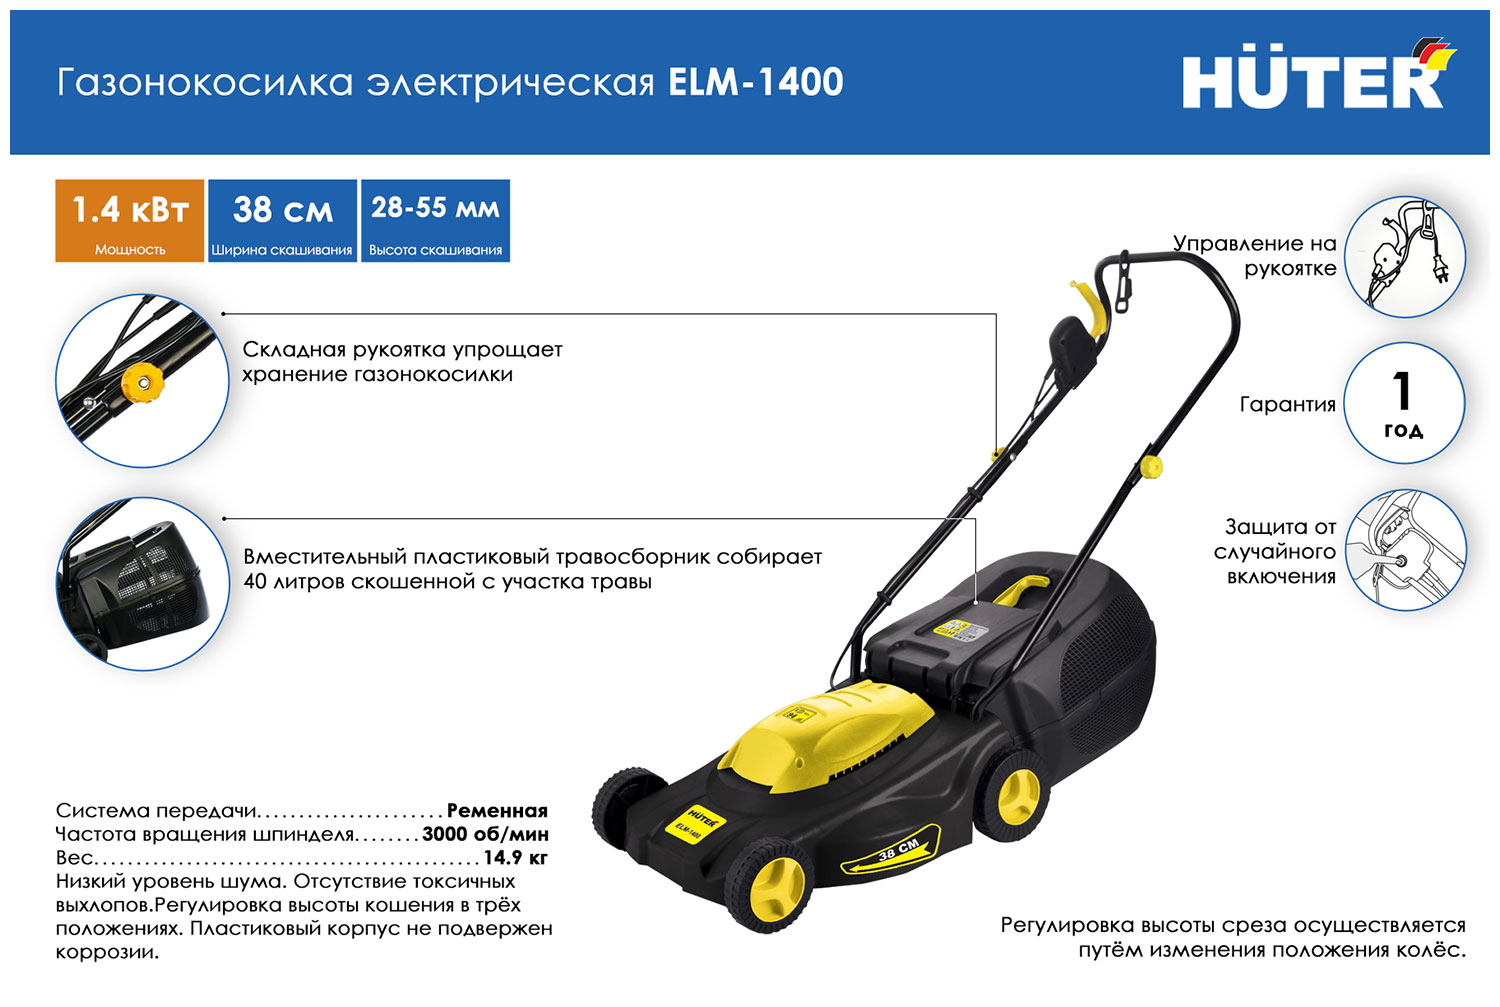 Колесная газонокосилка Huter ELM-1400